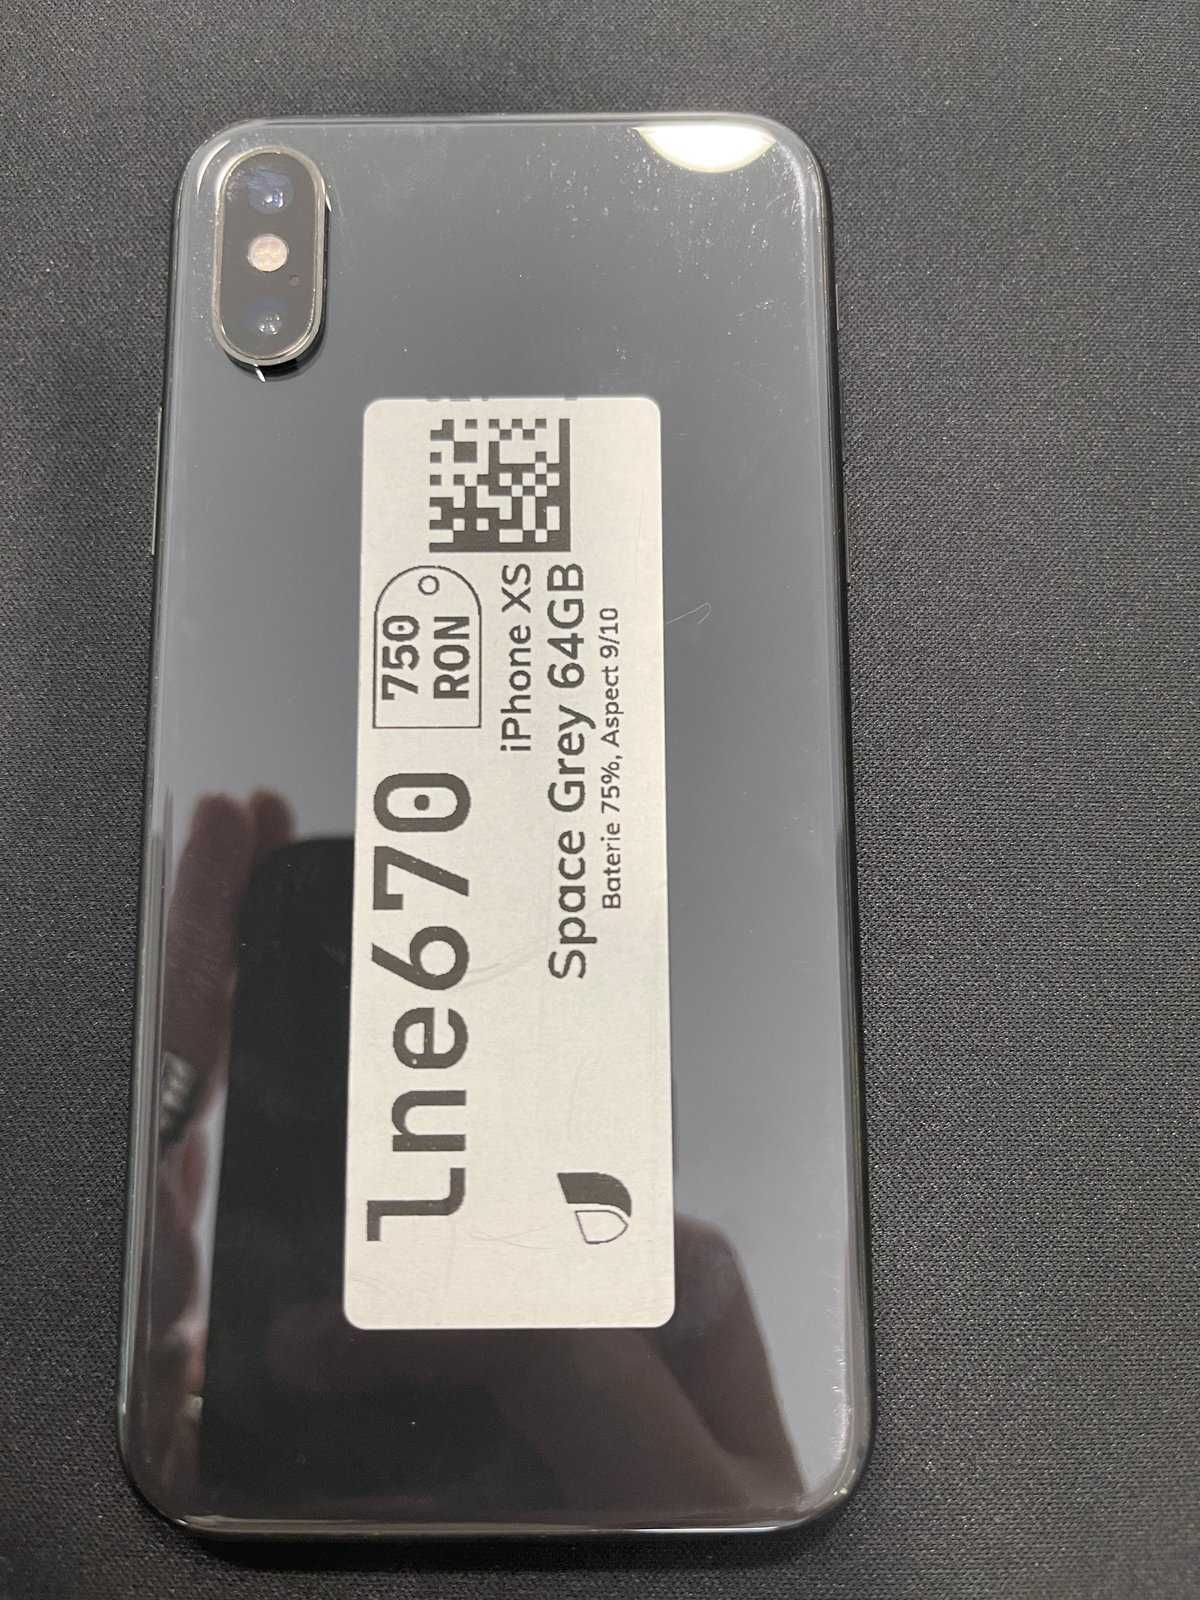 iPhone XS 64GB Space Grey ID-lne670